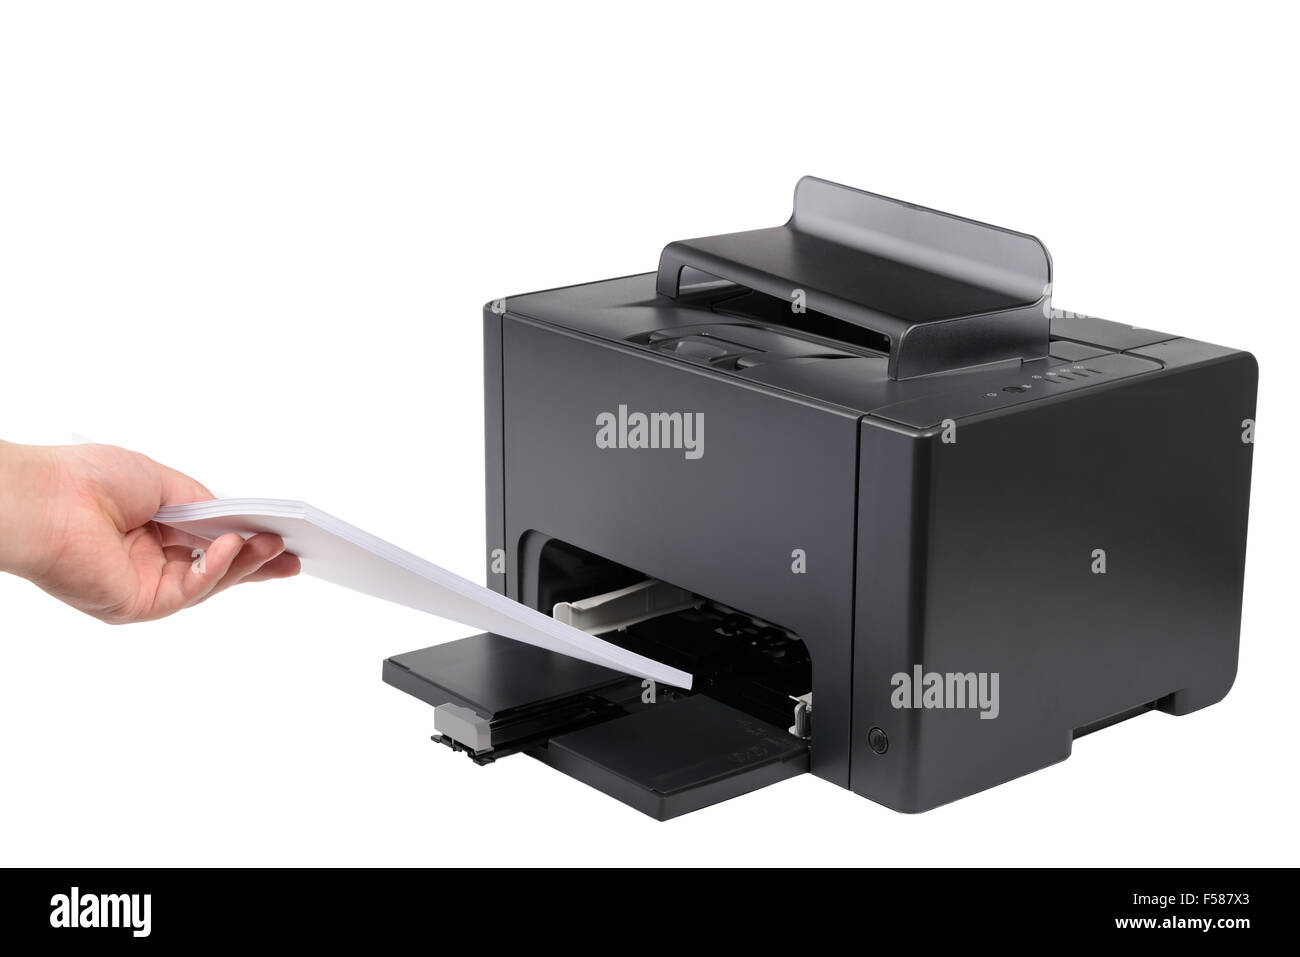 Complementa el papel de tamaño A4 en una impresora láser, aislado en blanco Foto de stock